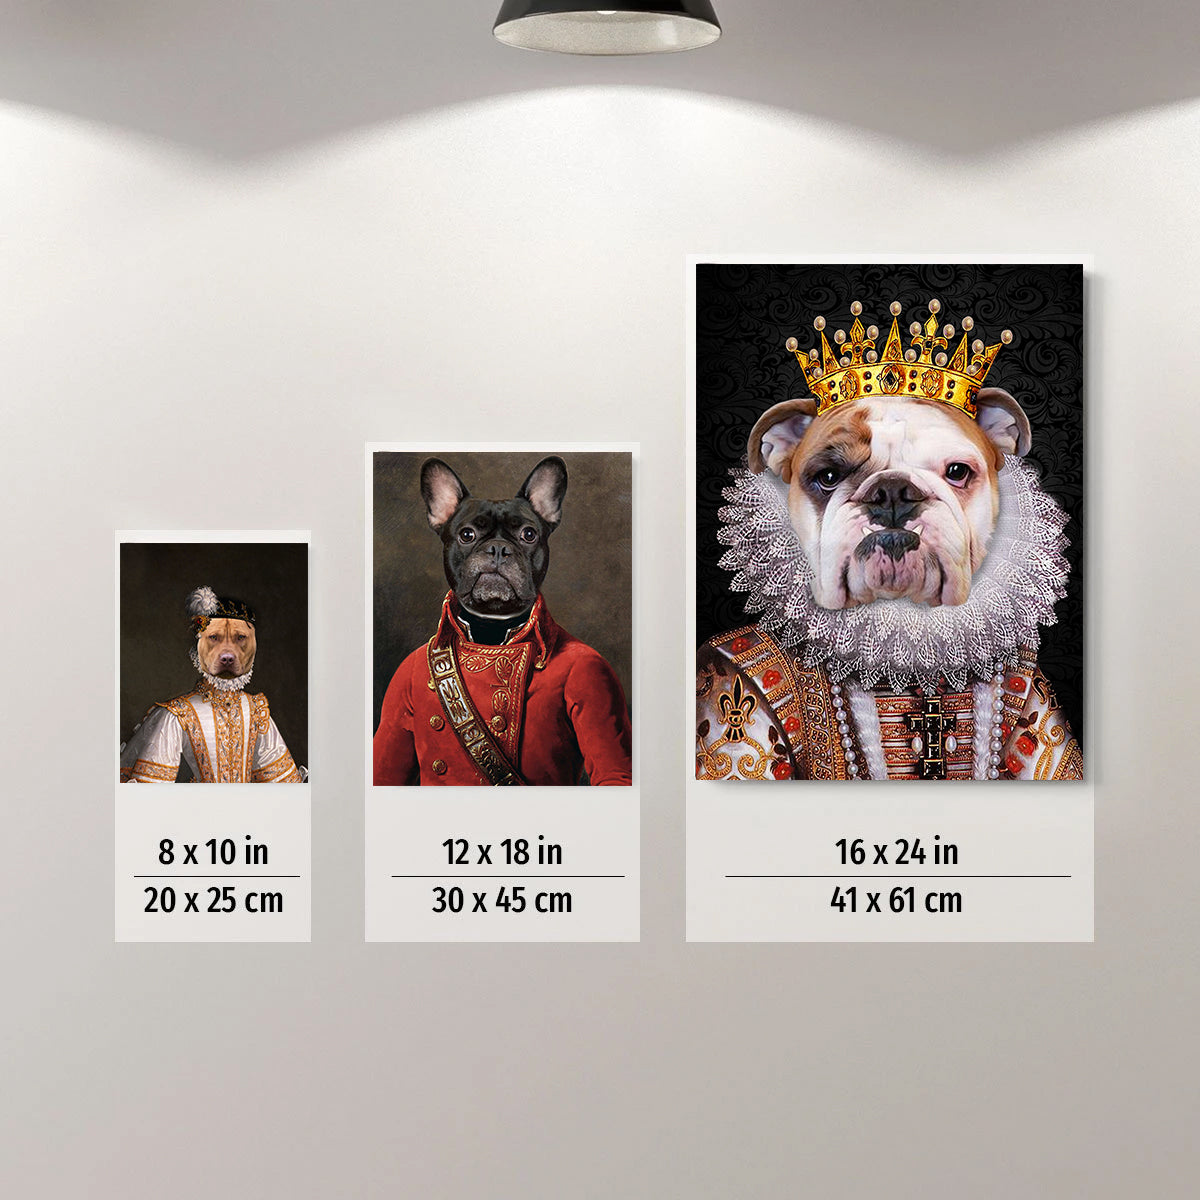 The Partner For Life Pet Portrait Poster - Noble Pawtrait